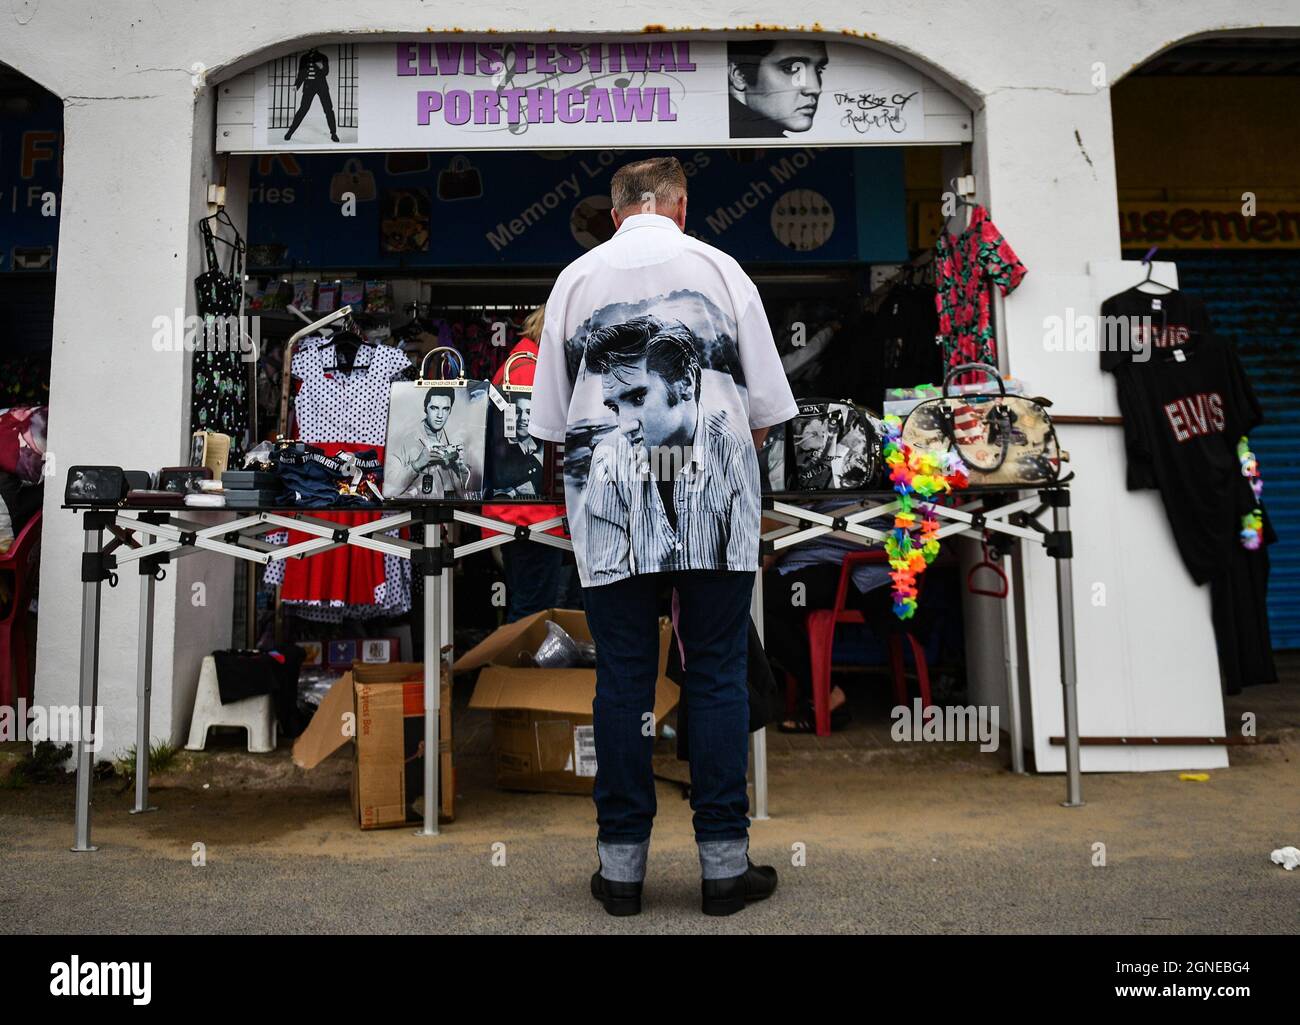 Un fan d'Elvis photographié dans un stand de marchandises au festival annuel d'Elvis à Porthcawl, au sud du pays de Galles, car il fait un retour pour la première fois depuis le début de la pandémie ce week-end. L'événement voit des milliers de fans d'Elvis affluer vers la ville balnéaire pour célébrer la musique et la vie du « roi ». Banque D'Images